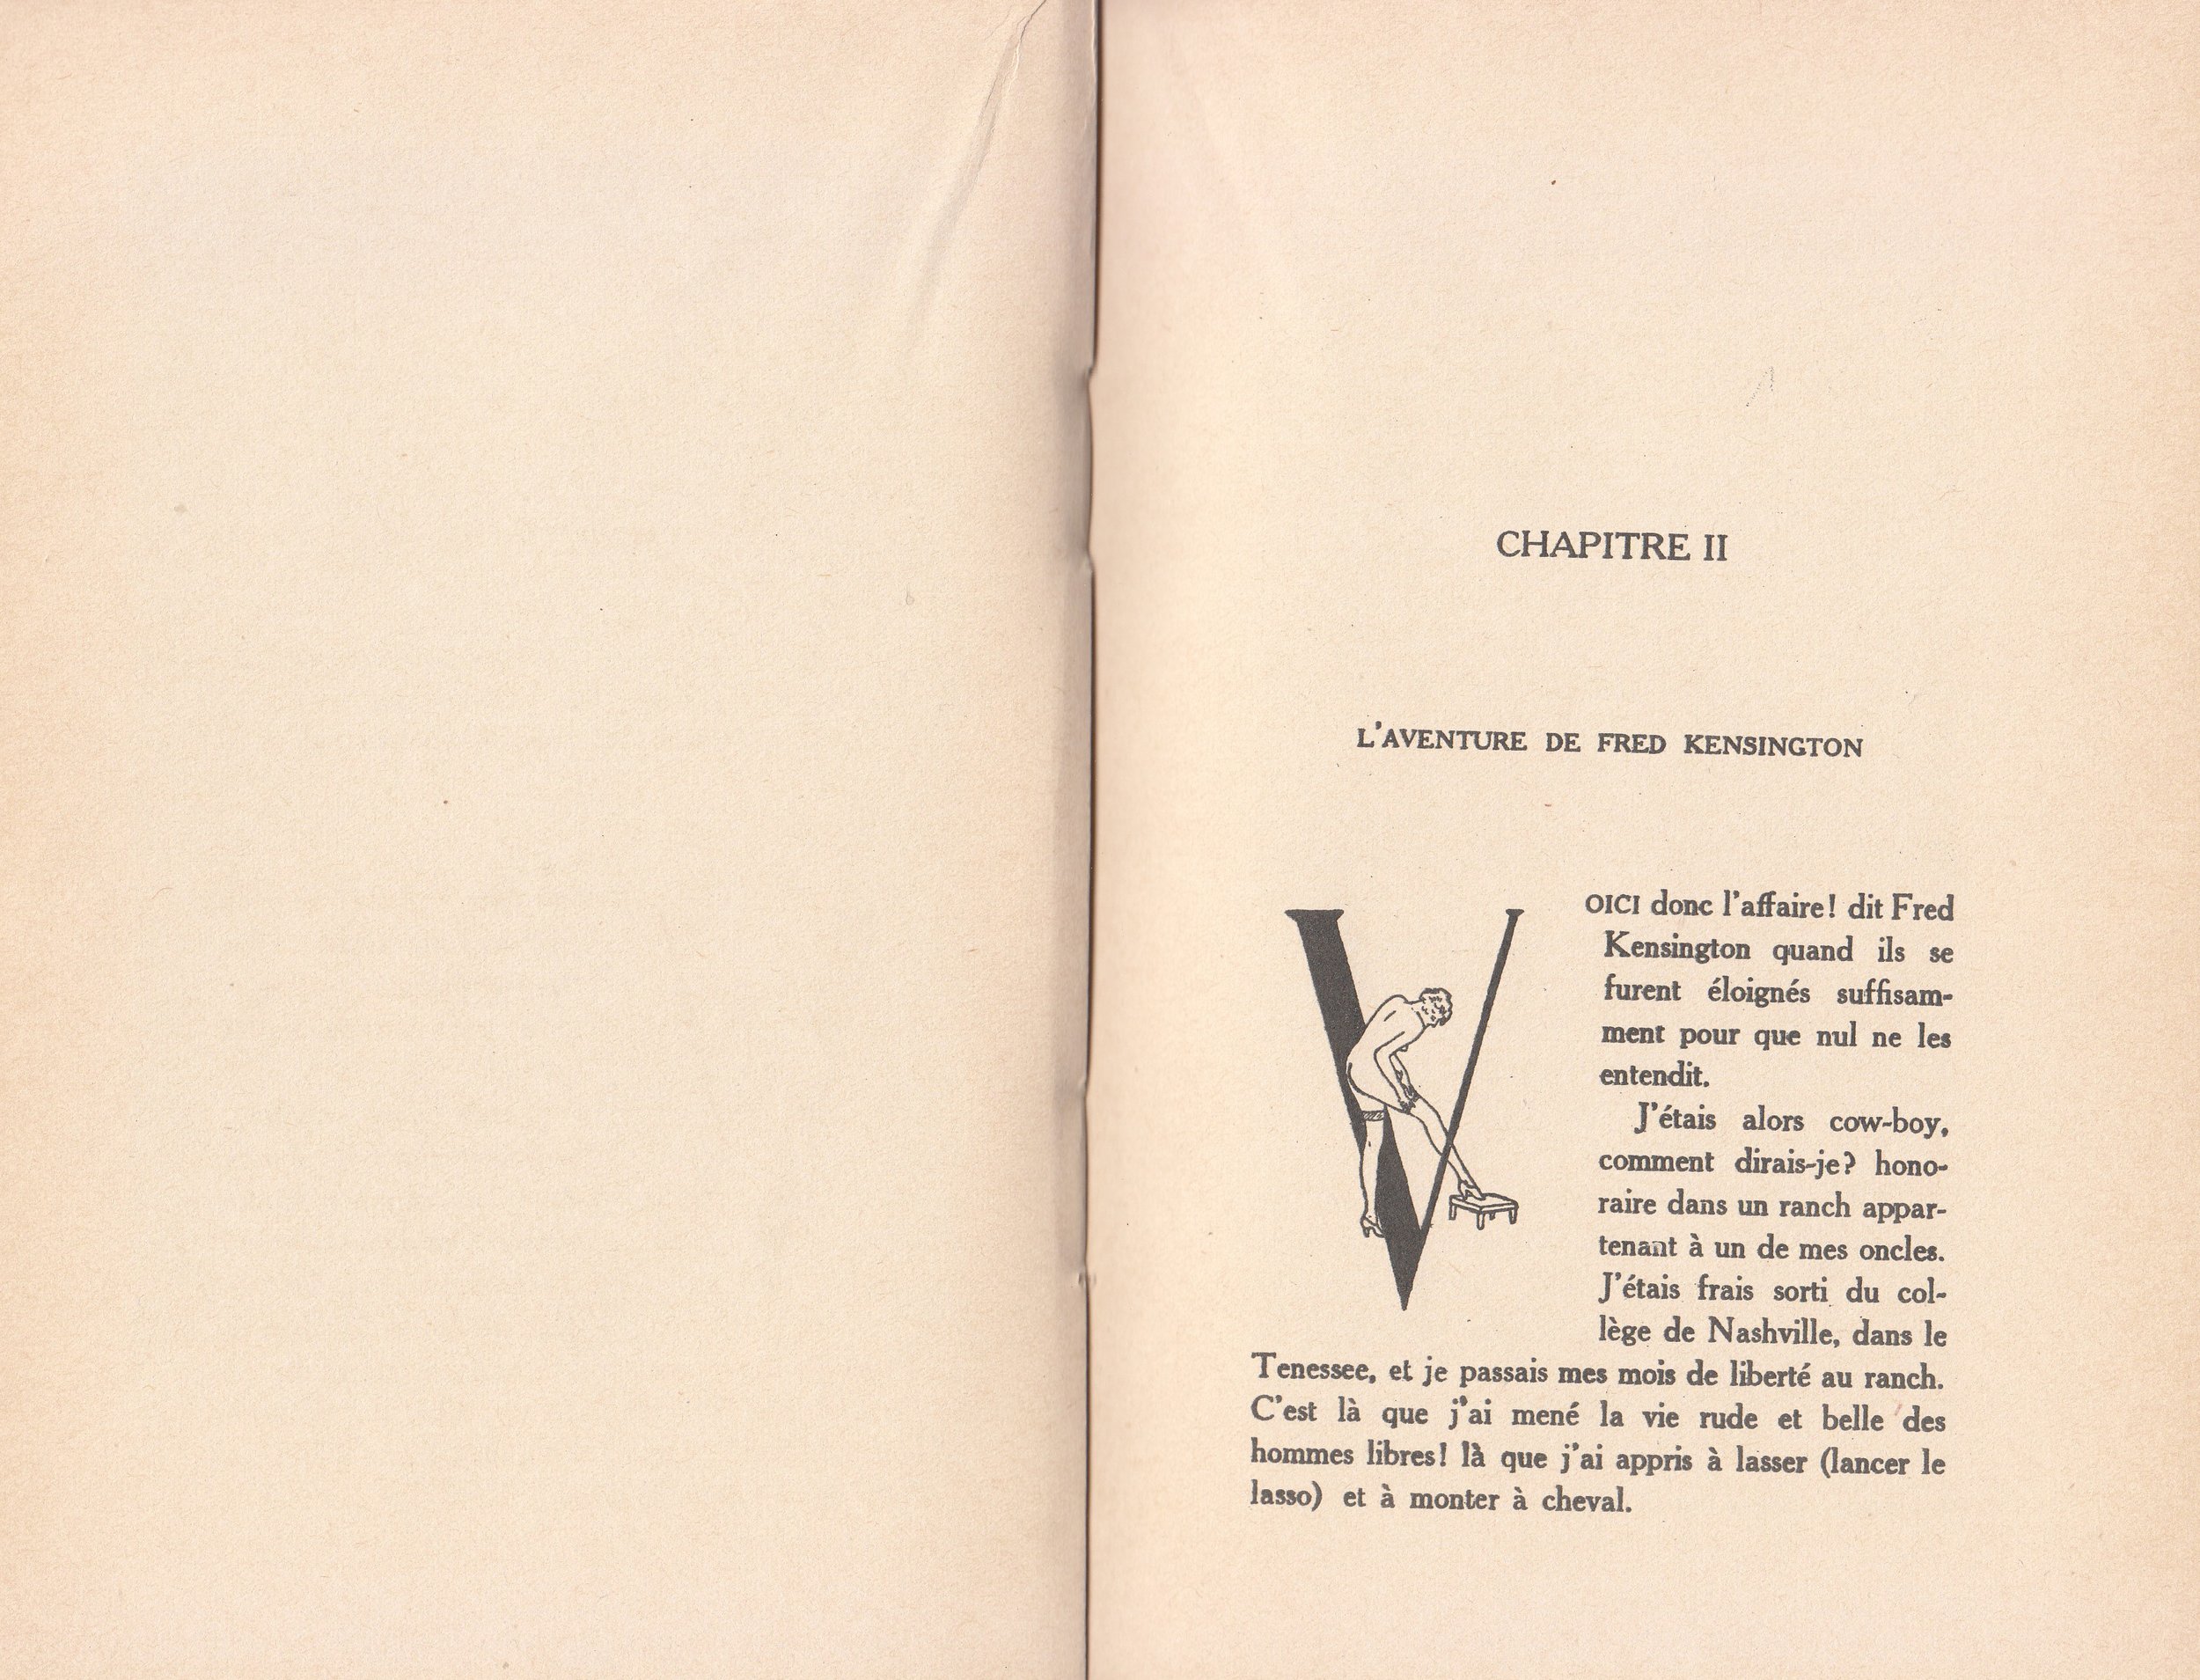 Novel Georges Topfer, 'Miss Cravache ou Les Vierges Esclaves' Spanking Illustrations_4.jpg